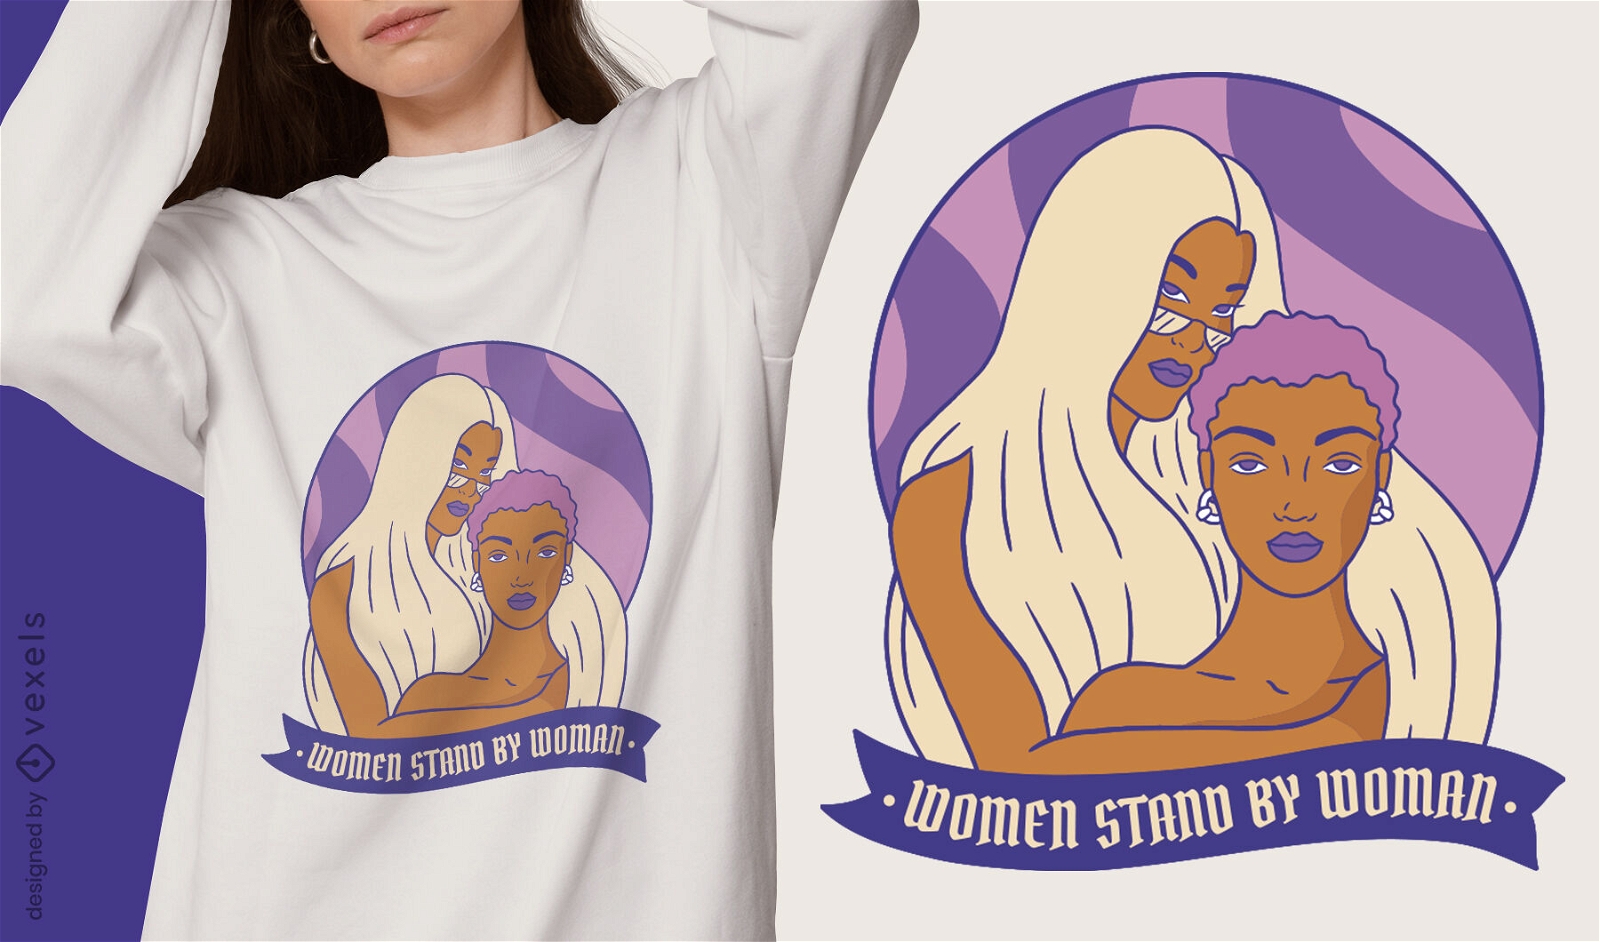 Potente diseño de camiseta de mujer fuerte.